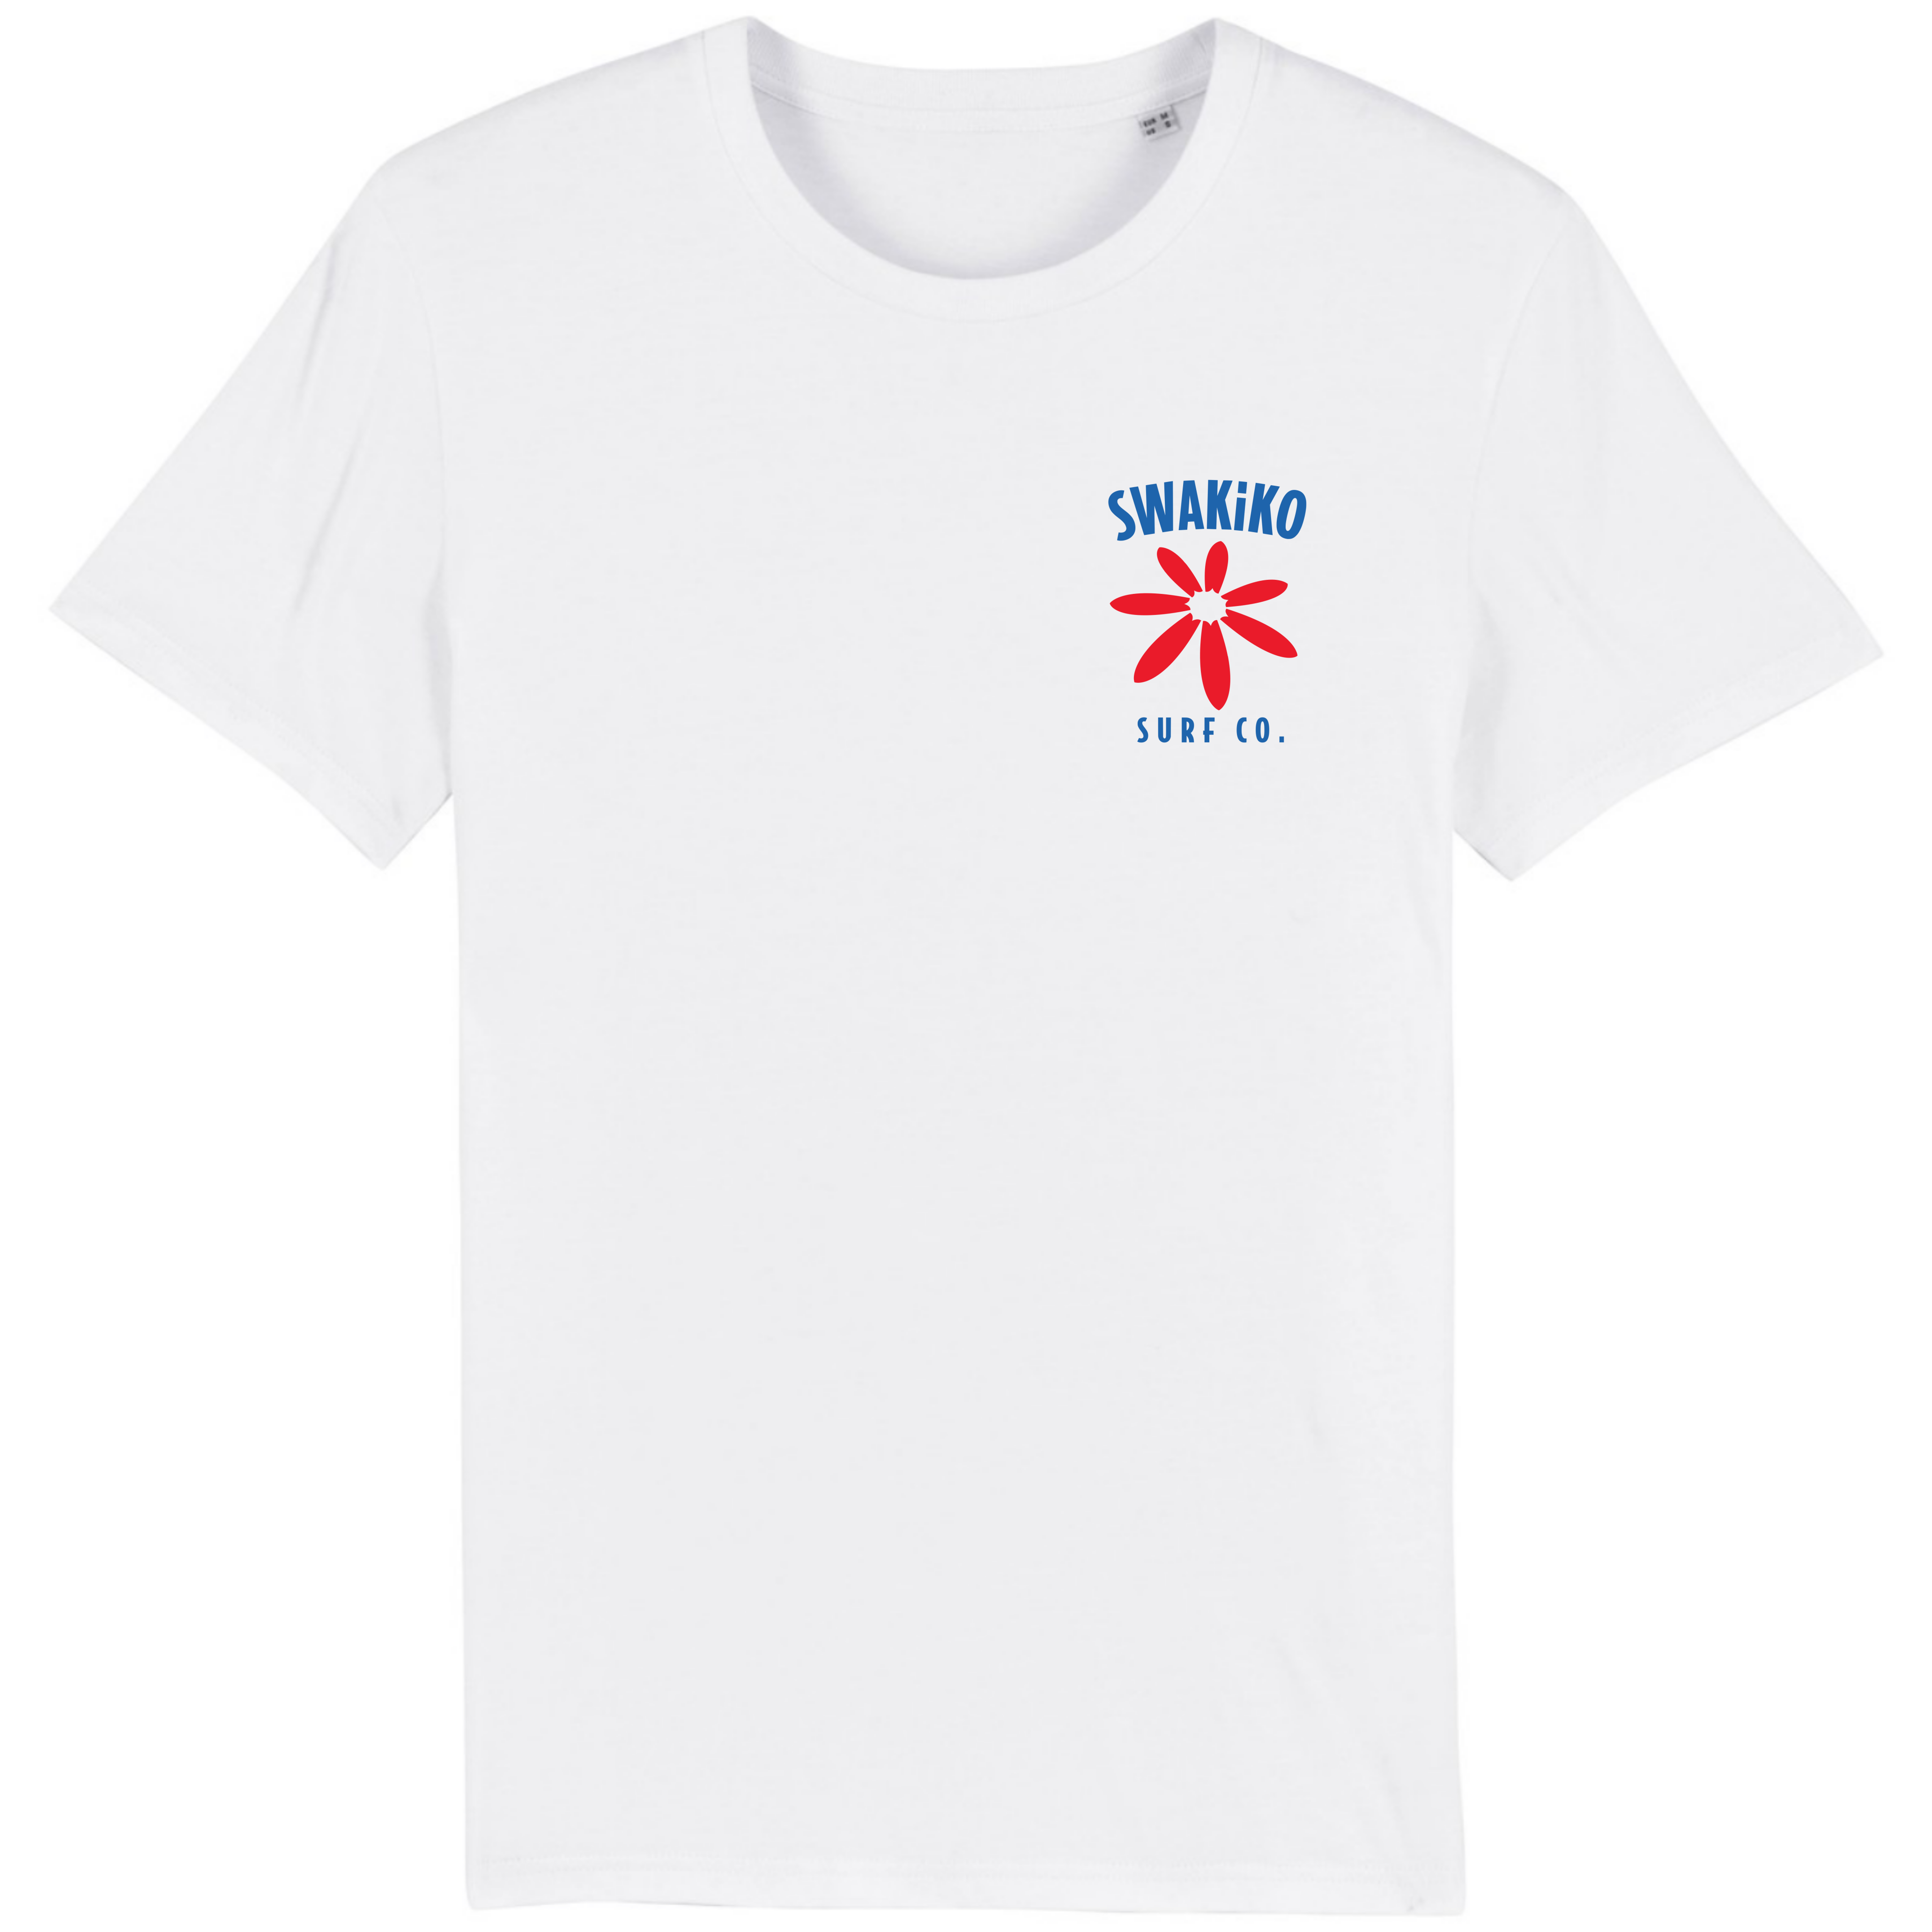 Wit surf T-shirt met op de borst het SWAKiKO logo en een bloem bestaand uit surfboards